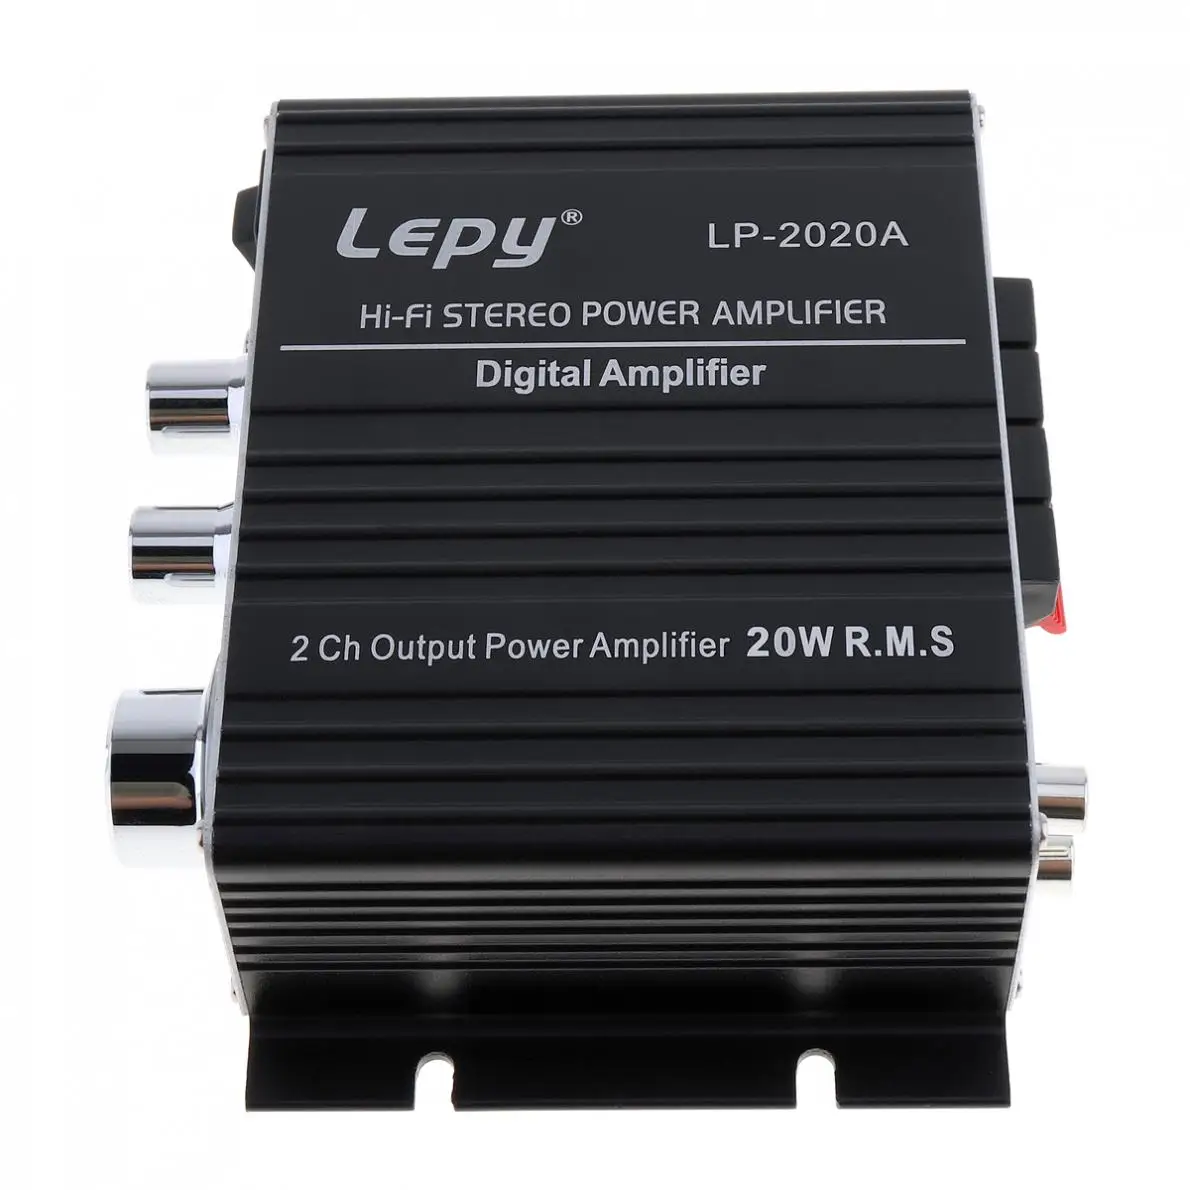 LEPY LP-2020A 20 Вт x 2 2CH цифровой стерео аудио усилитель класса D Hi-Fi стерео усилитель мощности с защитой от перегрузки по току